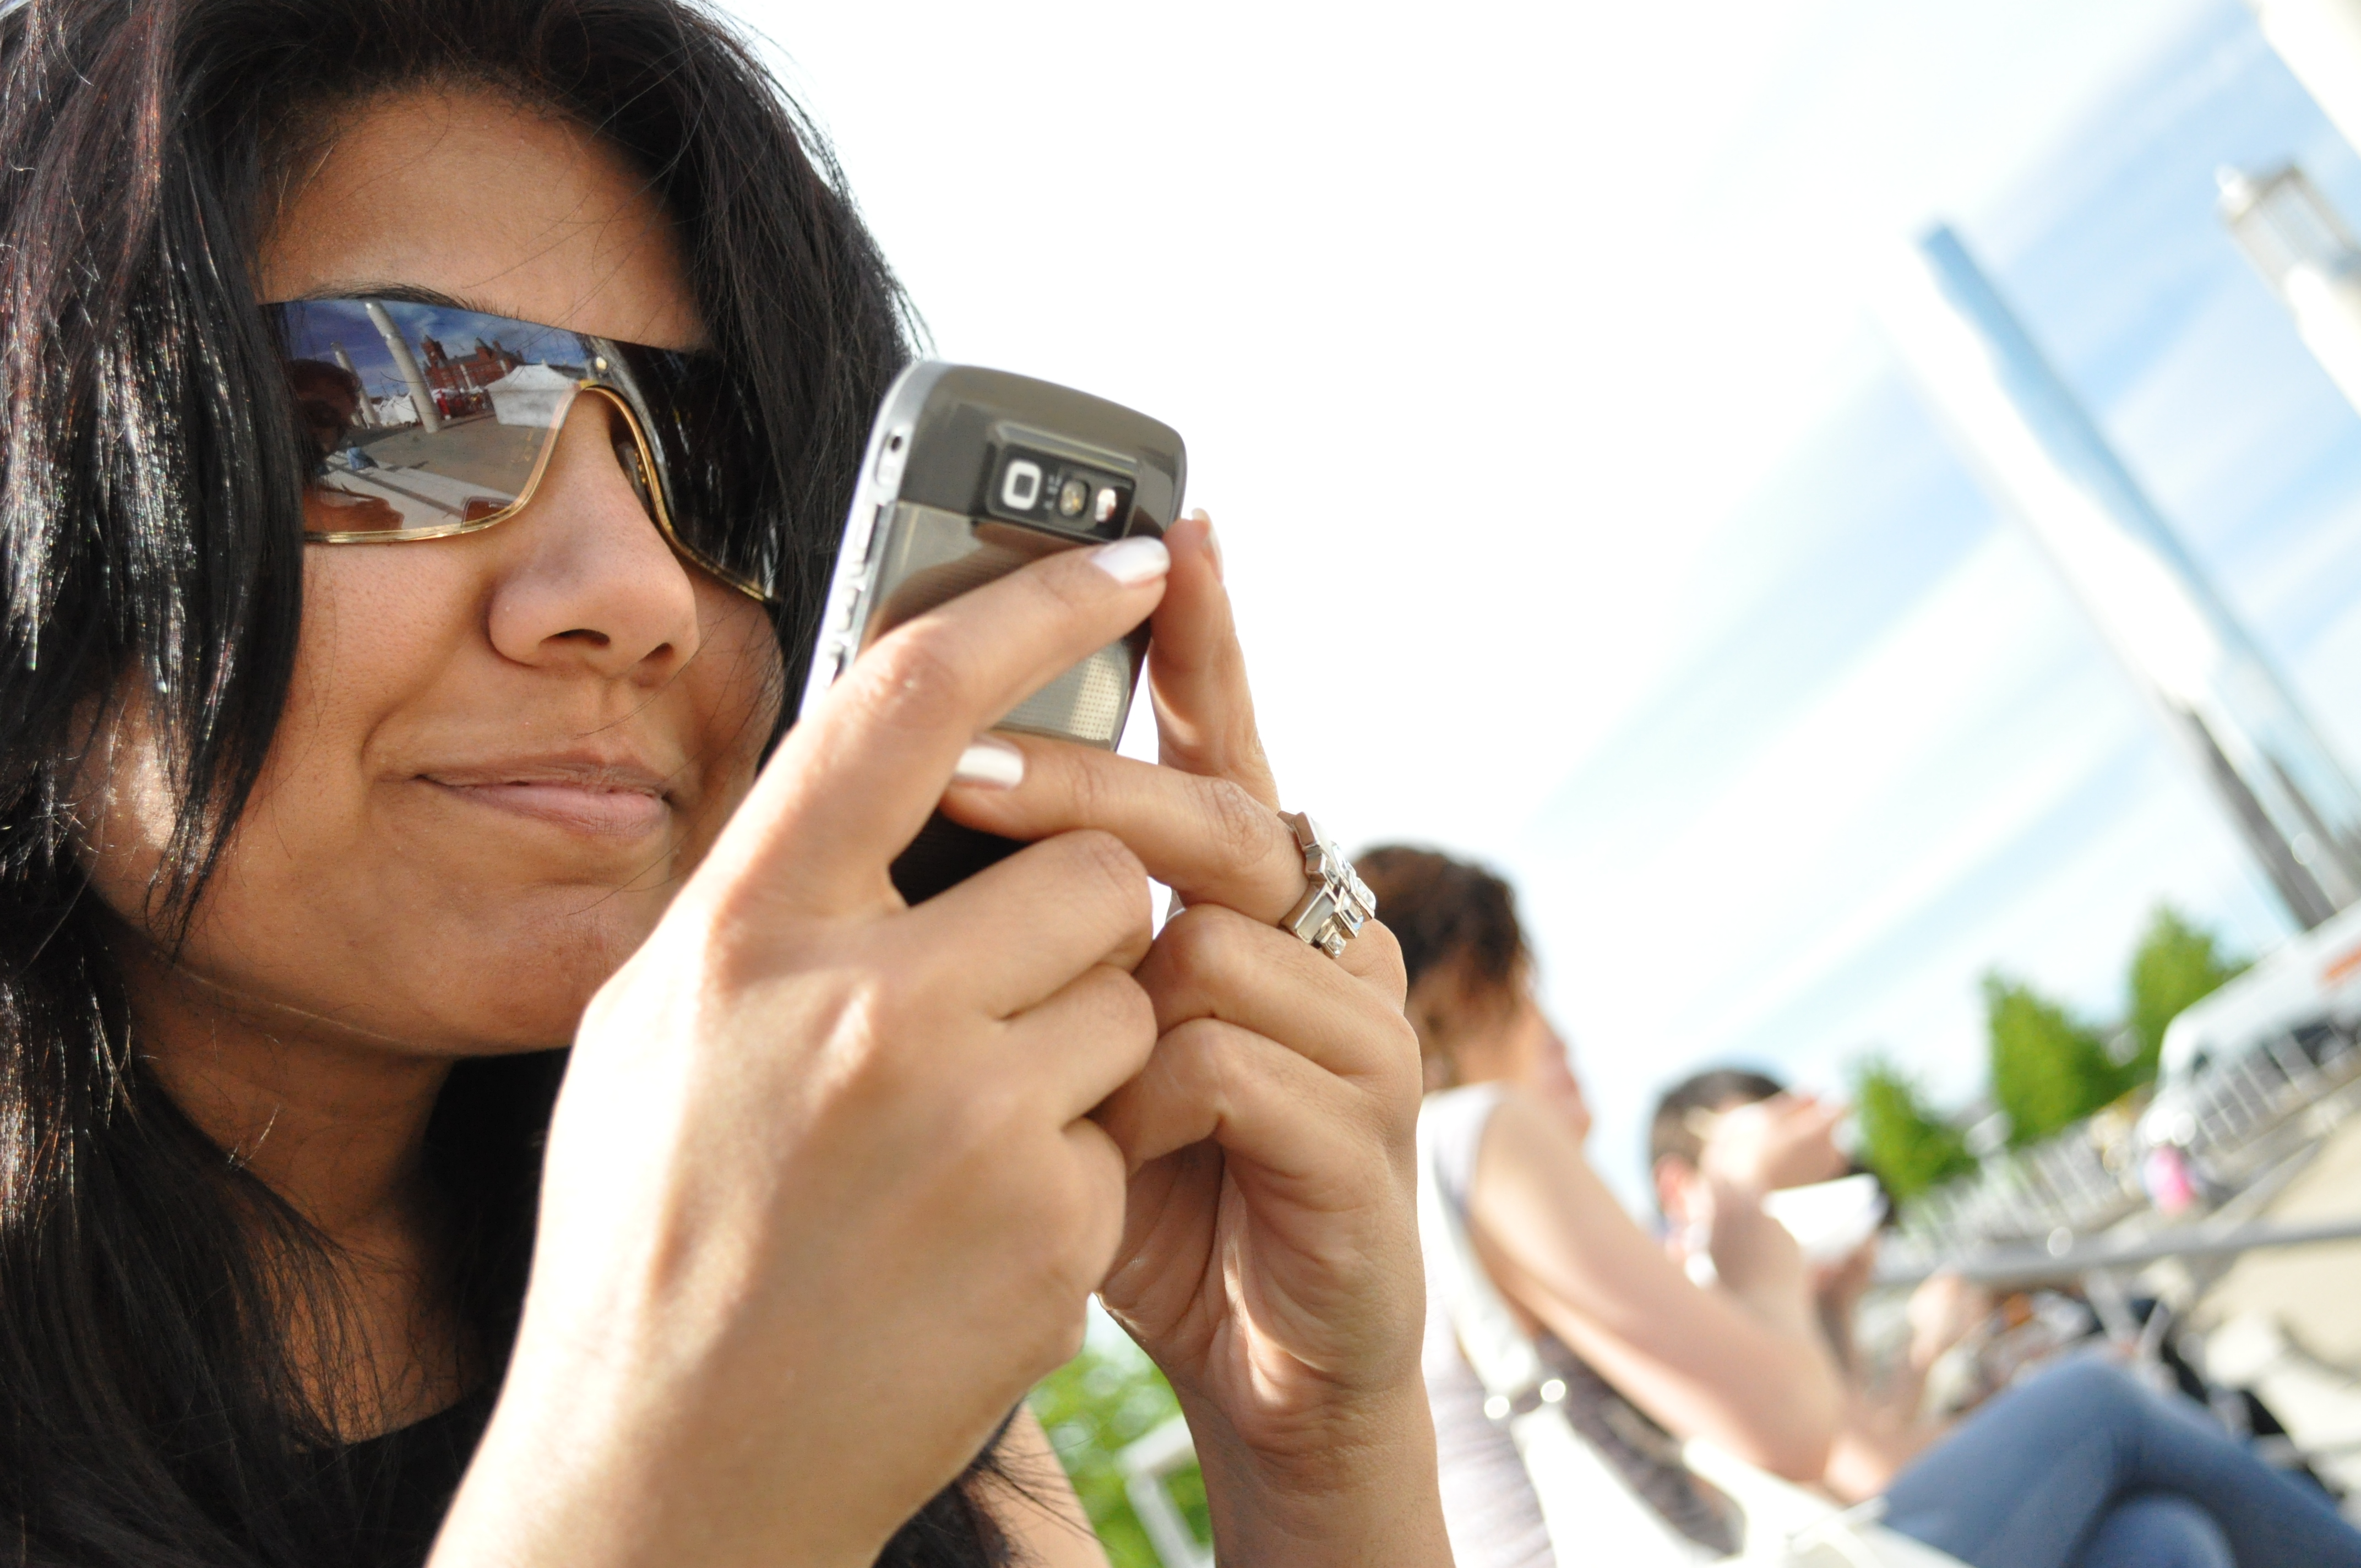 Uma foto mostra uma mulher segurando um telefone perto do rosto enquanto envia uma mensagem de texto para alguém.